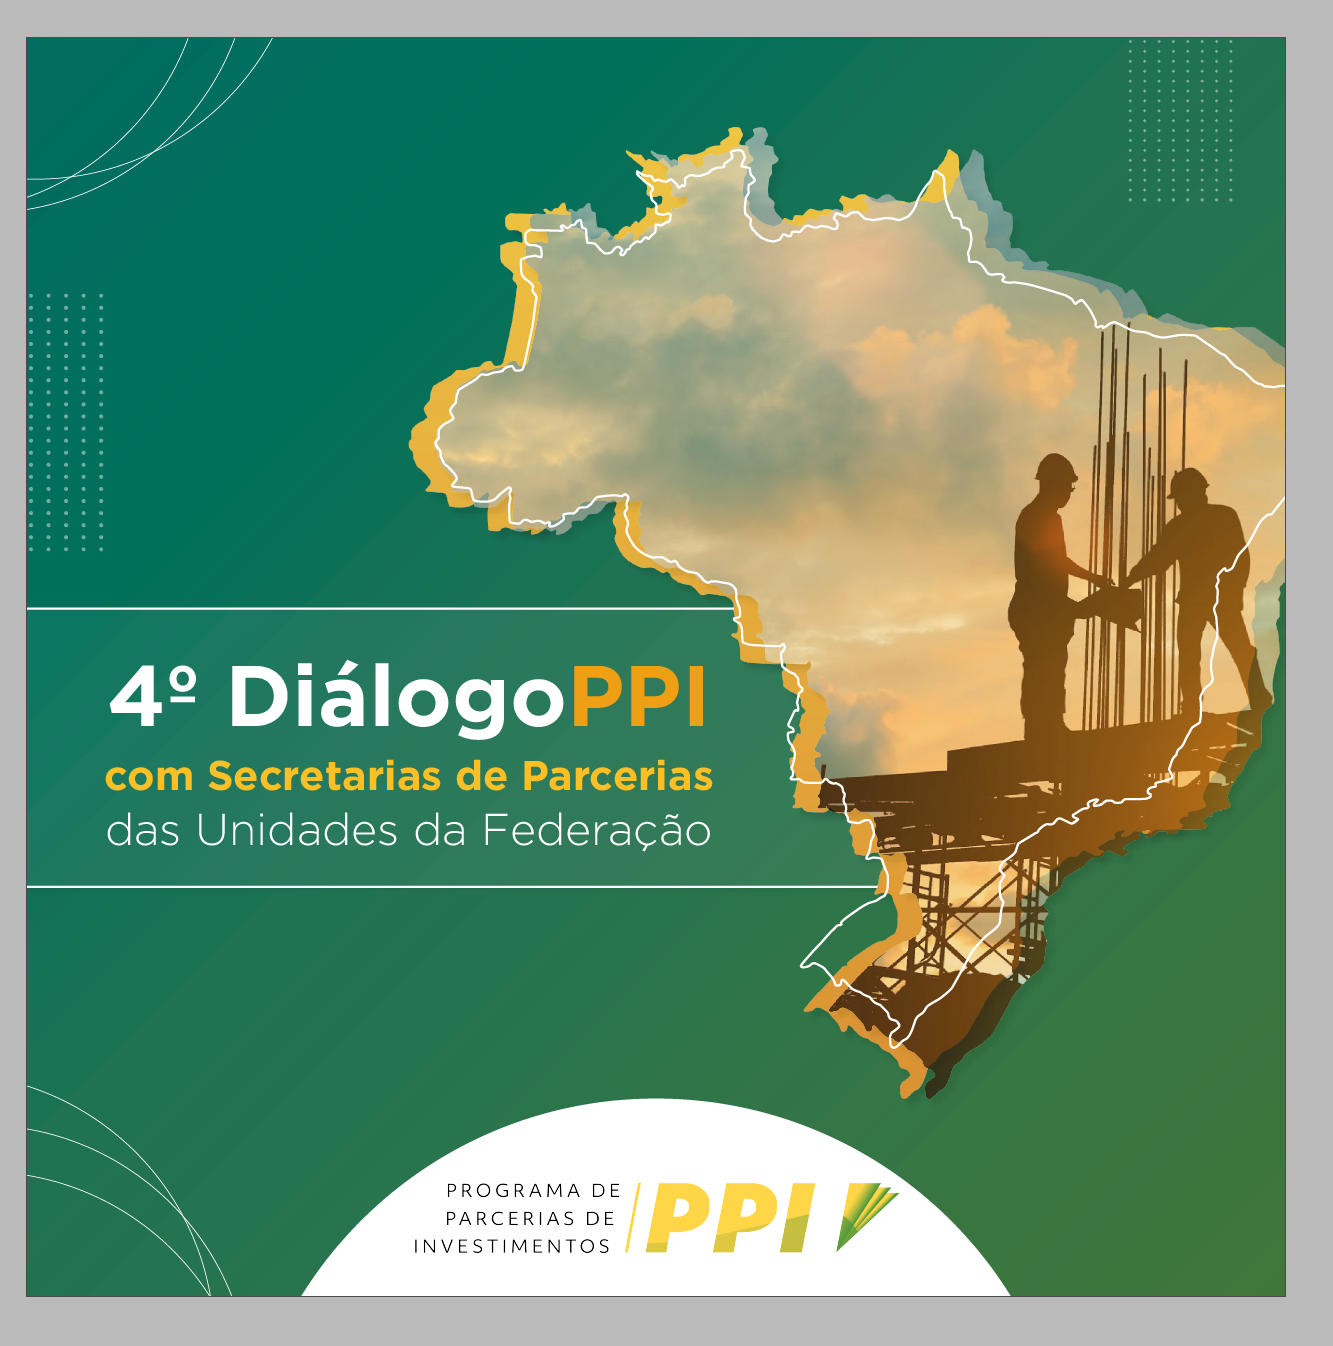 Goiás Parcerias participa do “4º Diálogo PPI”